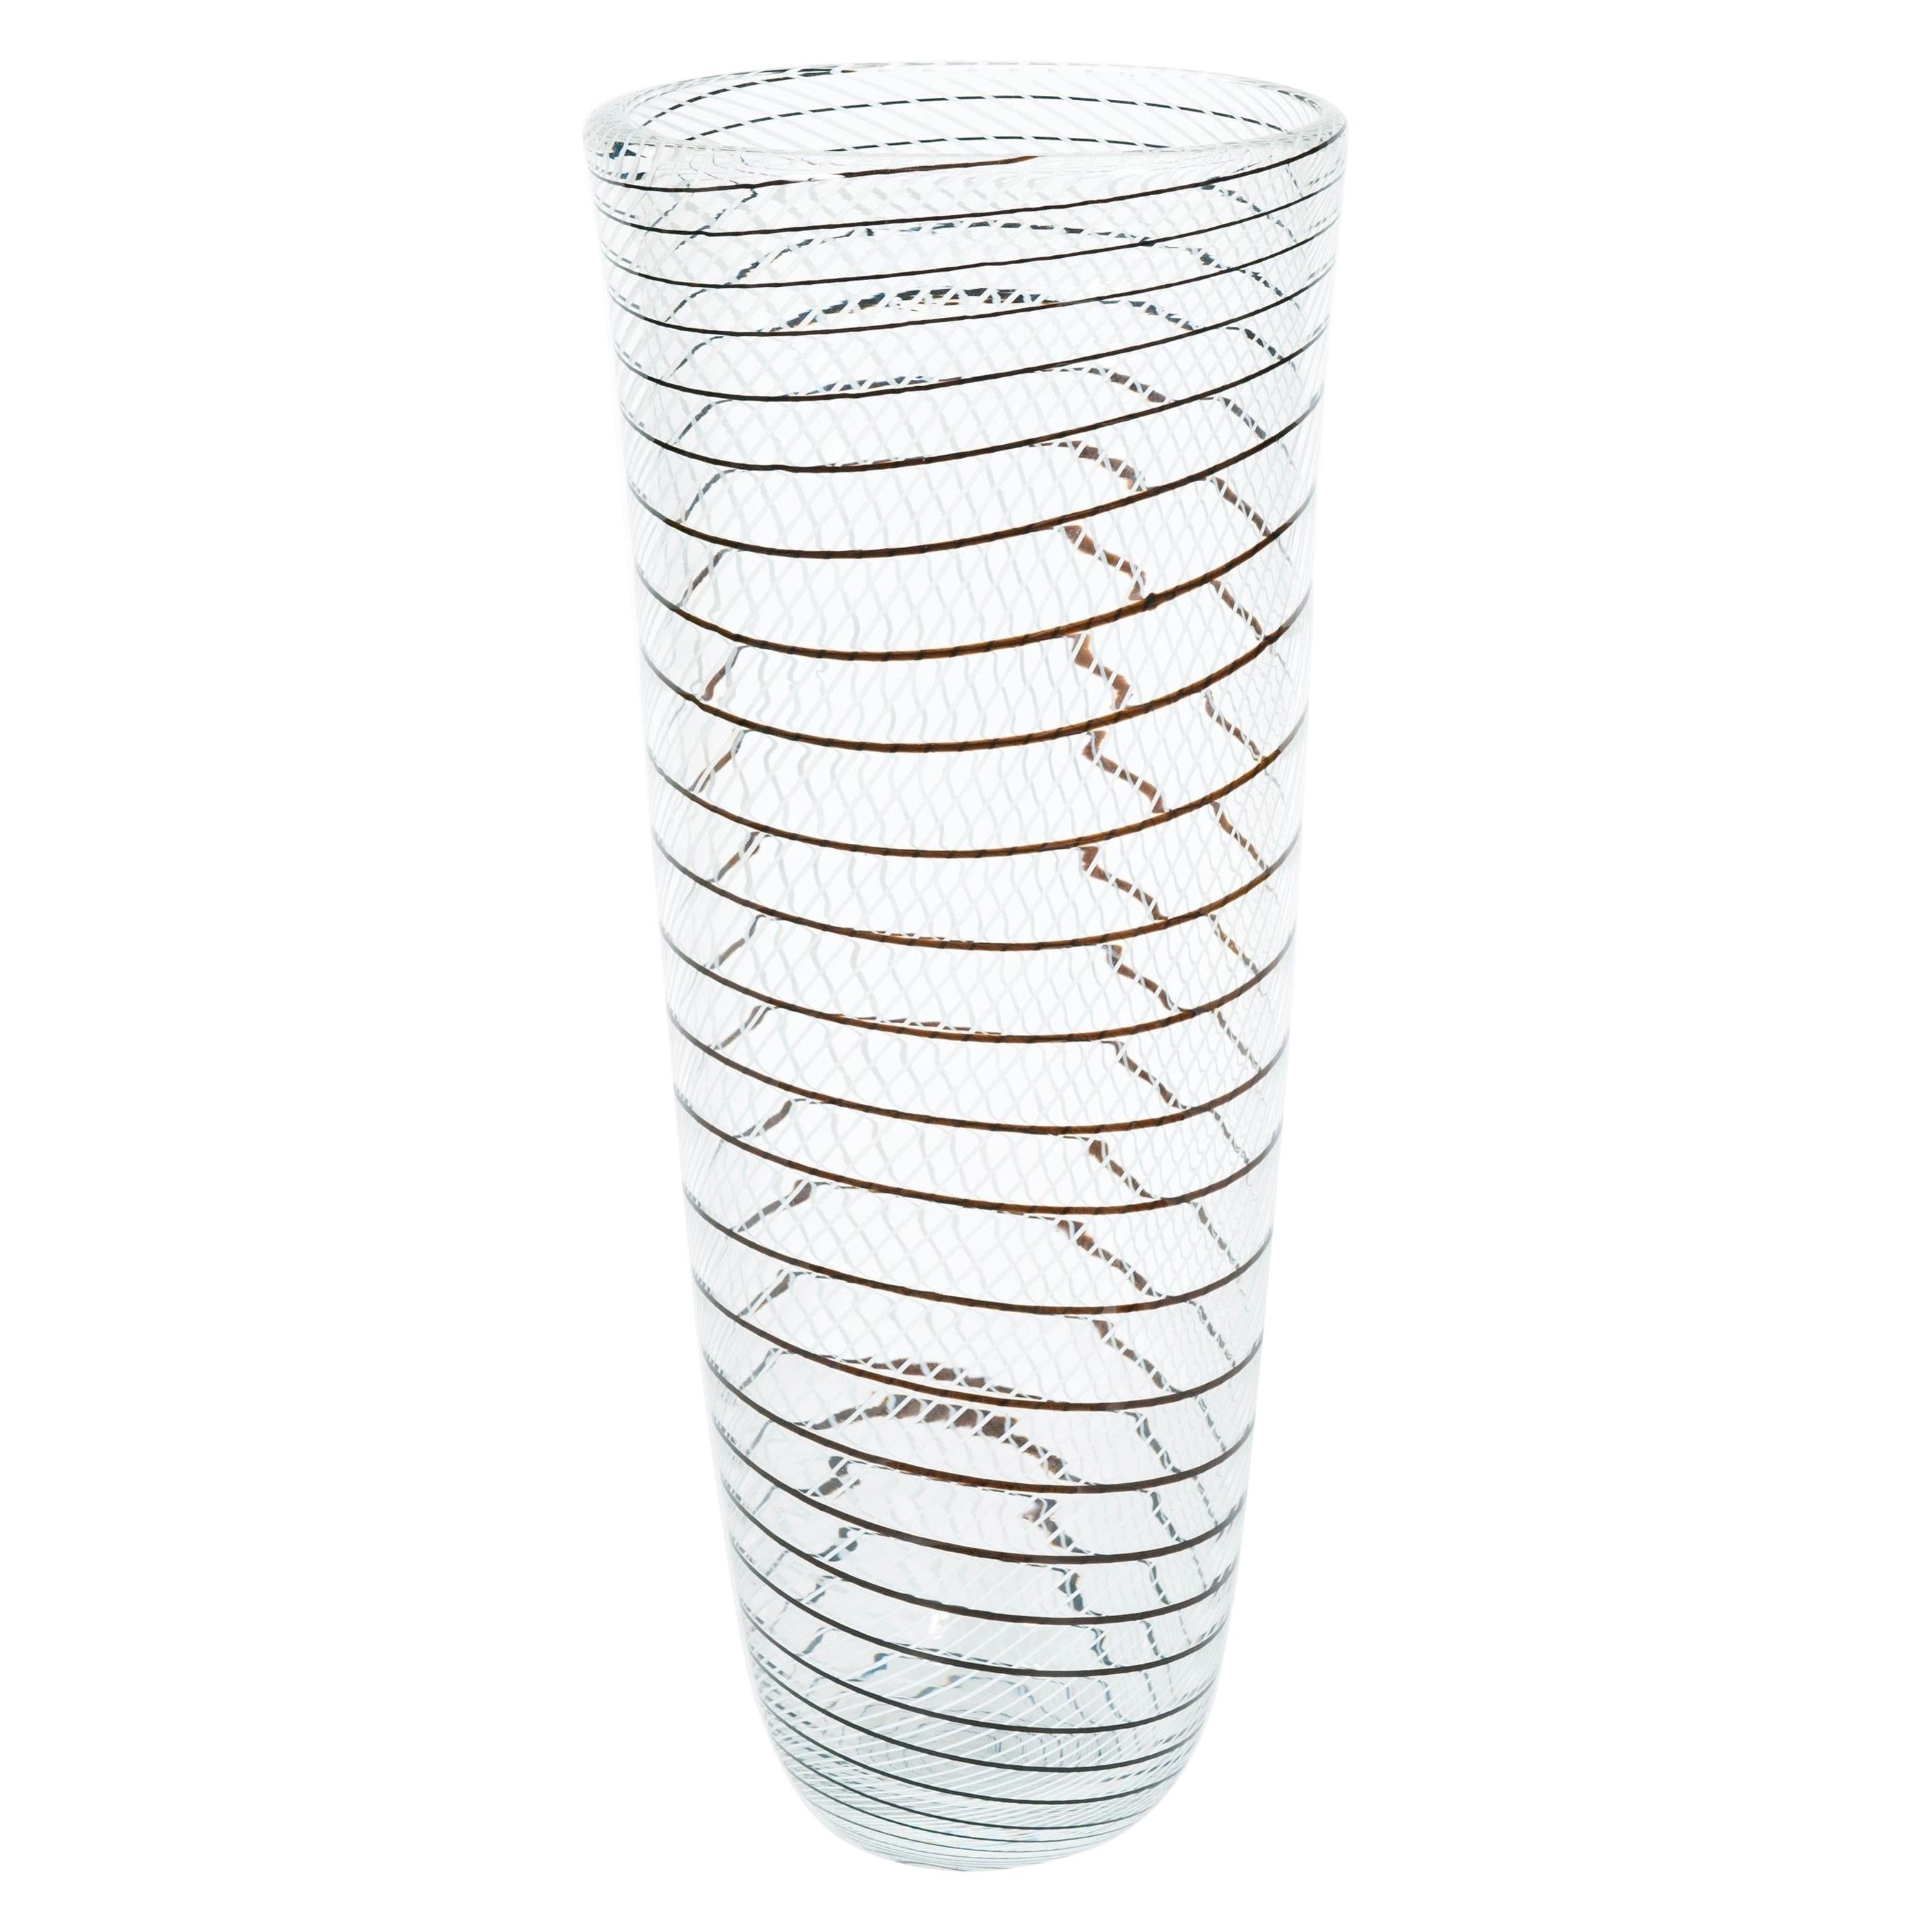 Artistische Vase aus transparentem Muranoglas mit schwarzen und weißen Mustern, 1990er Jahre